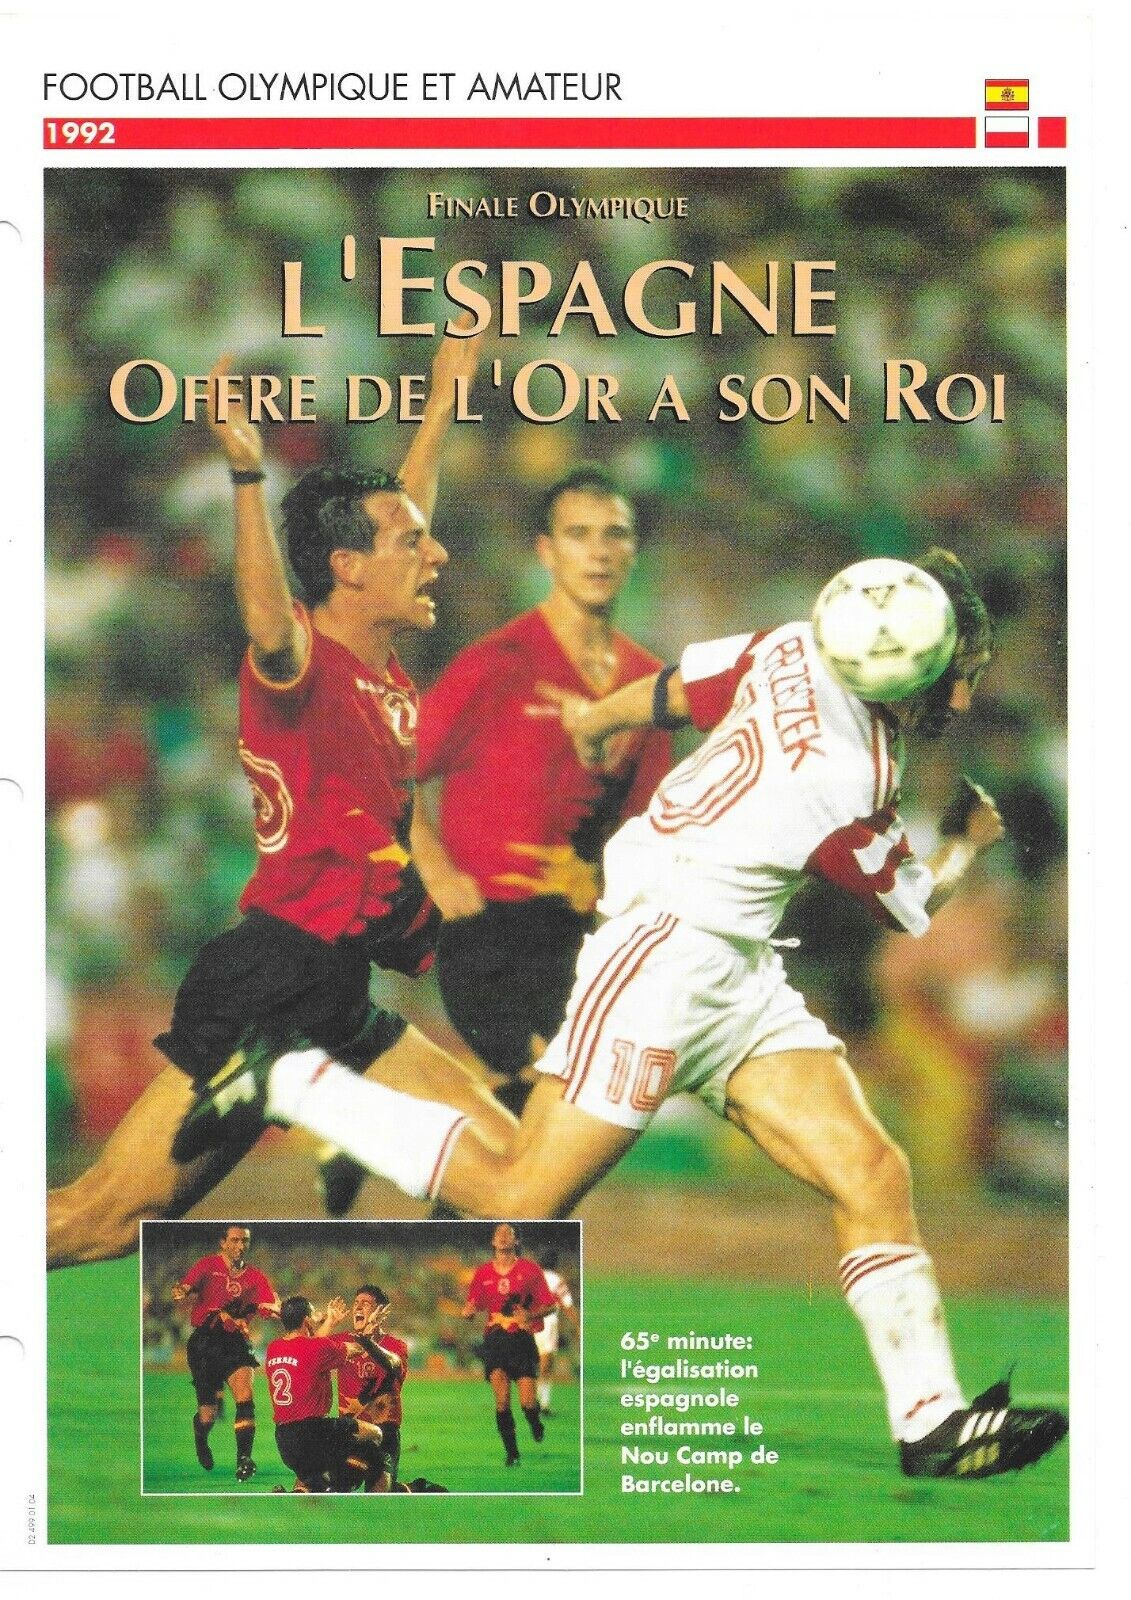 Atlas card - Olympic and amateur football - Spain (1992)